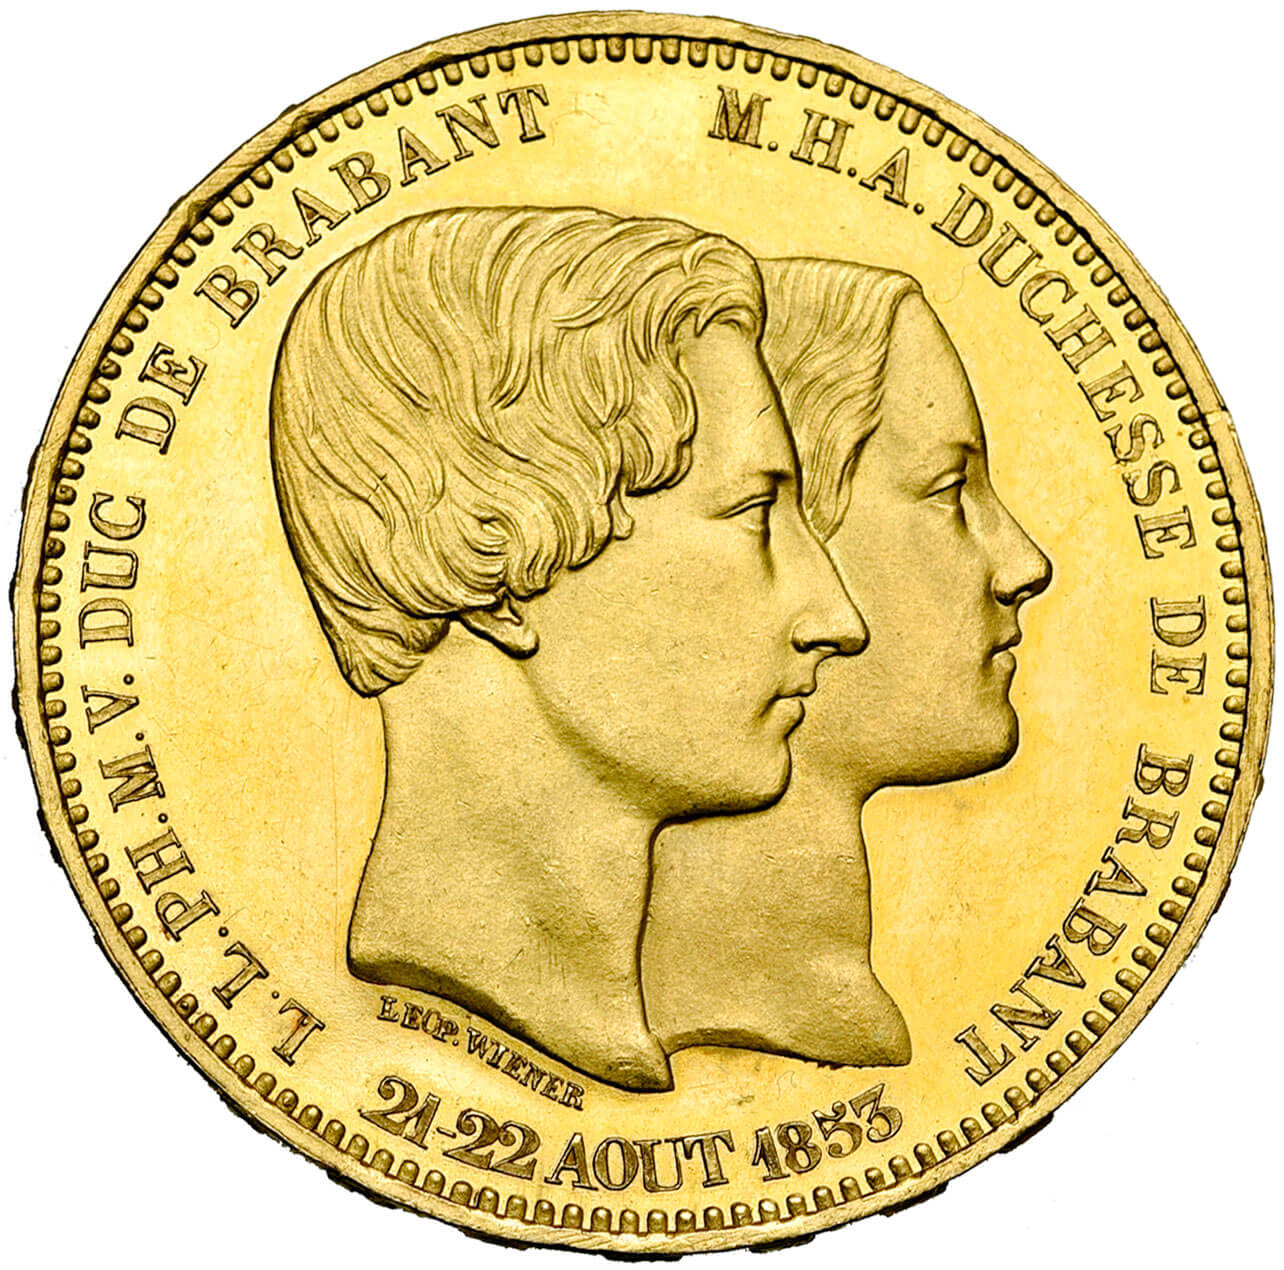 Module de 100 francs commémorant le mariage du duc de Brabant (1853), or